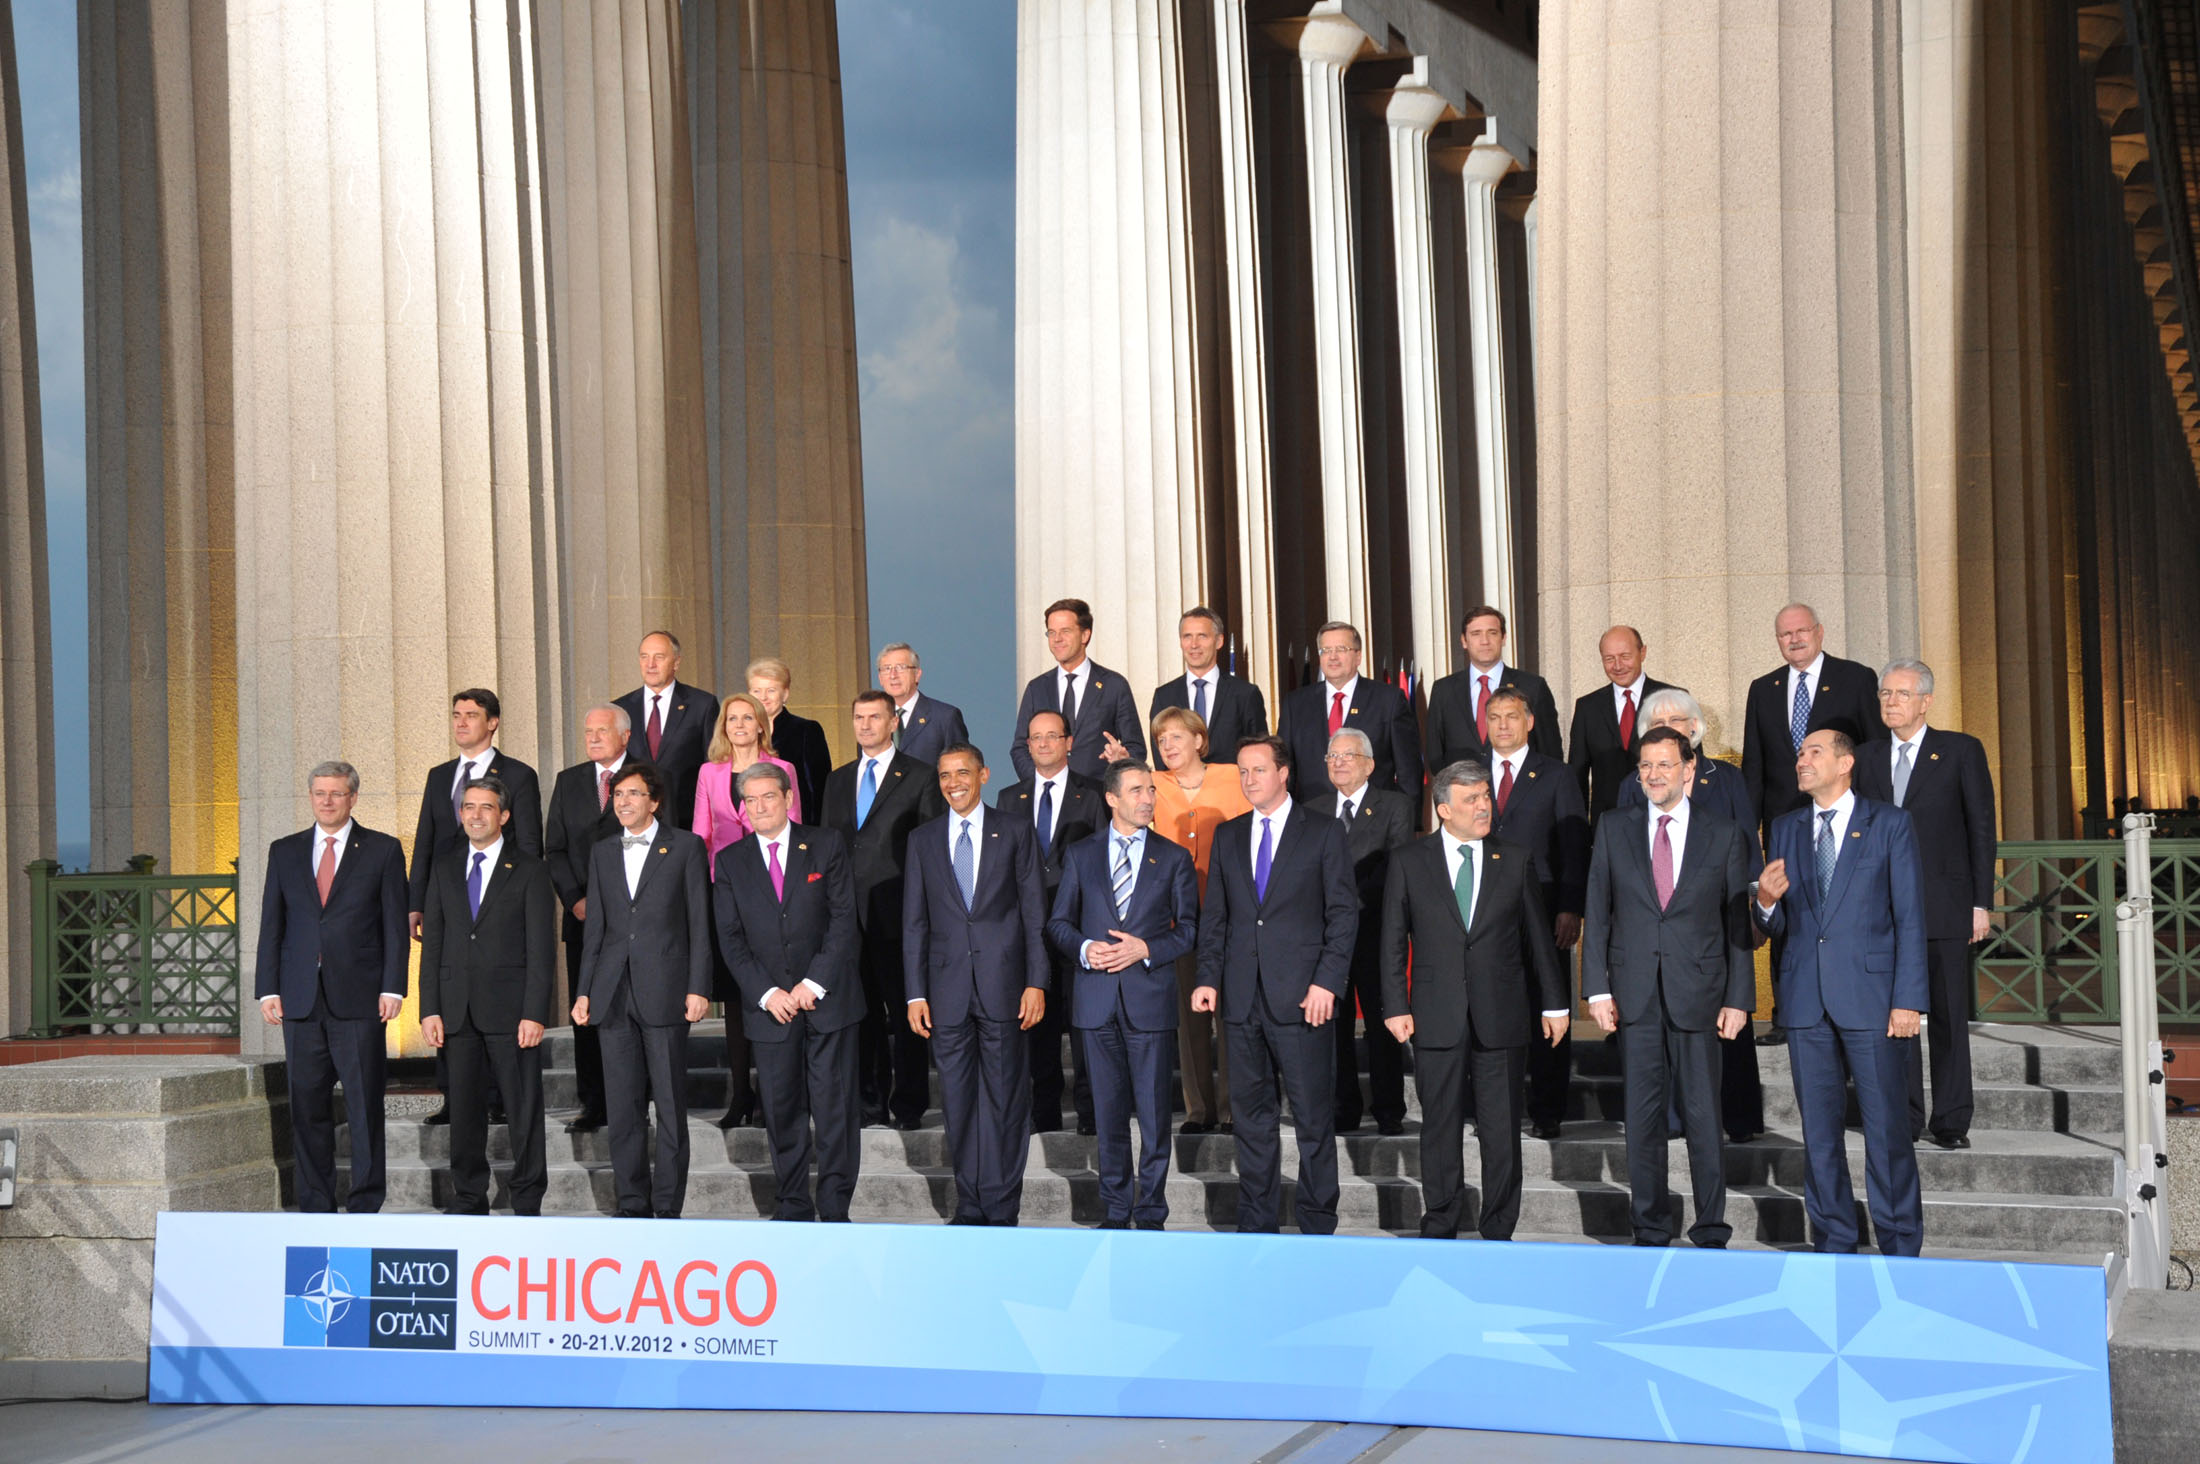 NATO Summit in Chicago